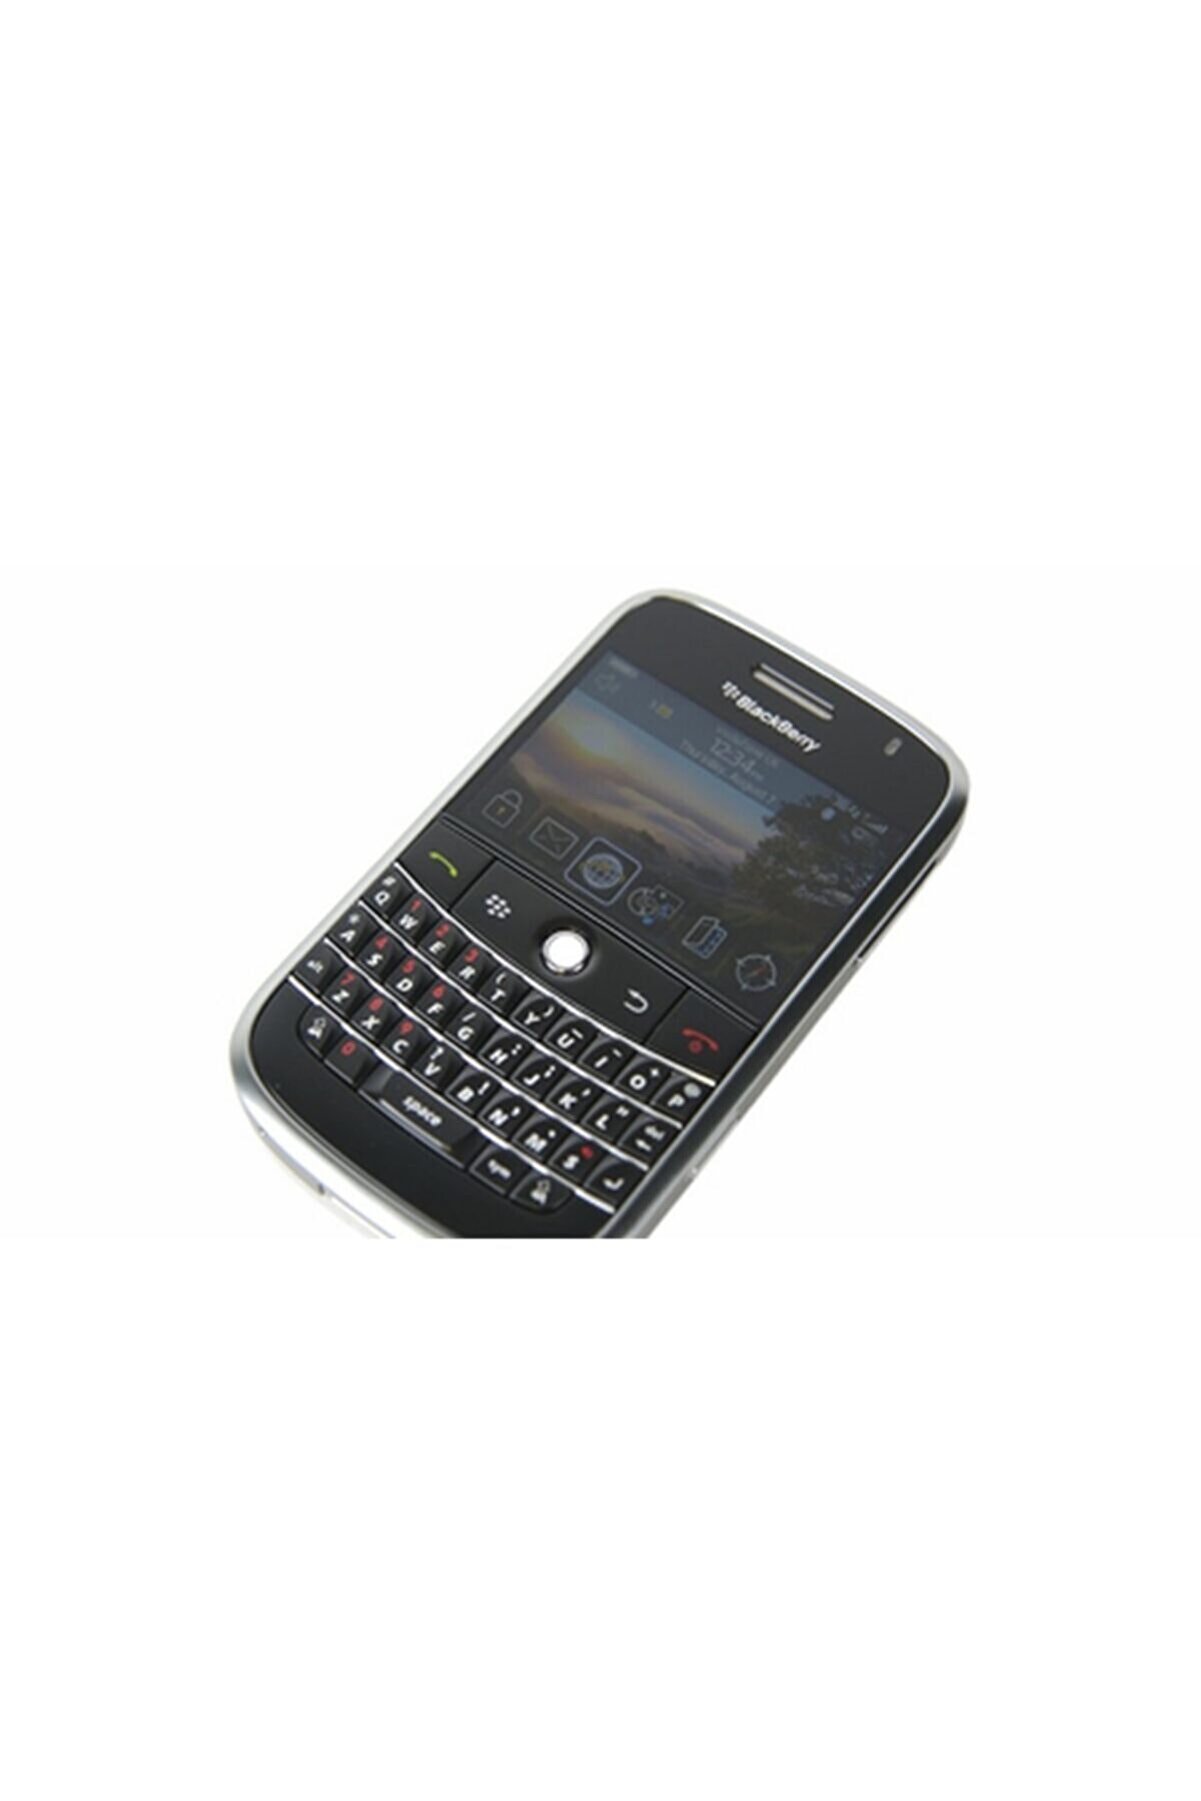 BlackBerry 9000 Bold Cep Telefonu Orginal Btk Kayıtllı Cihazlar...